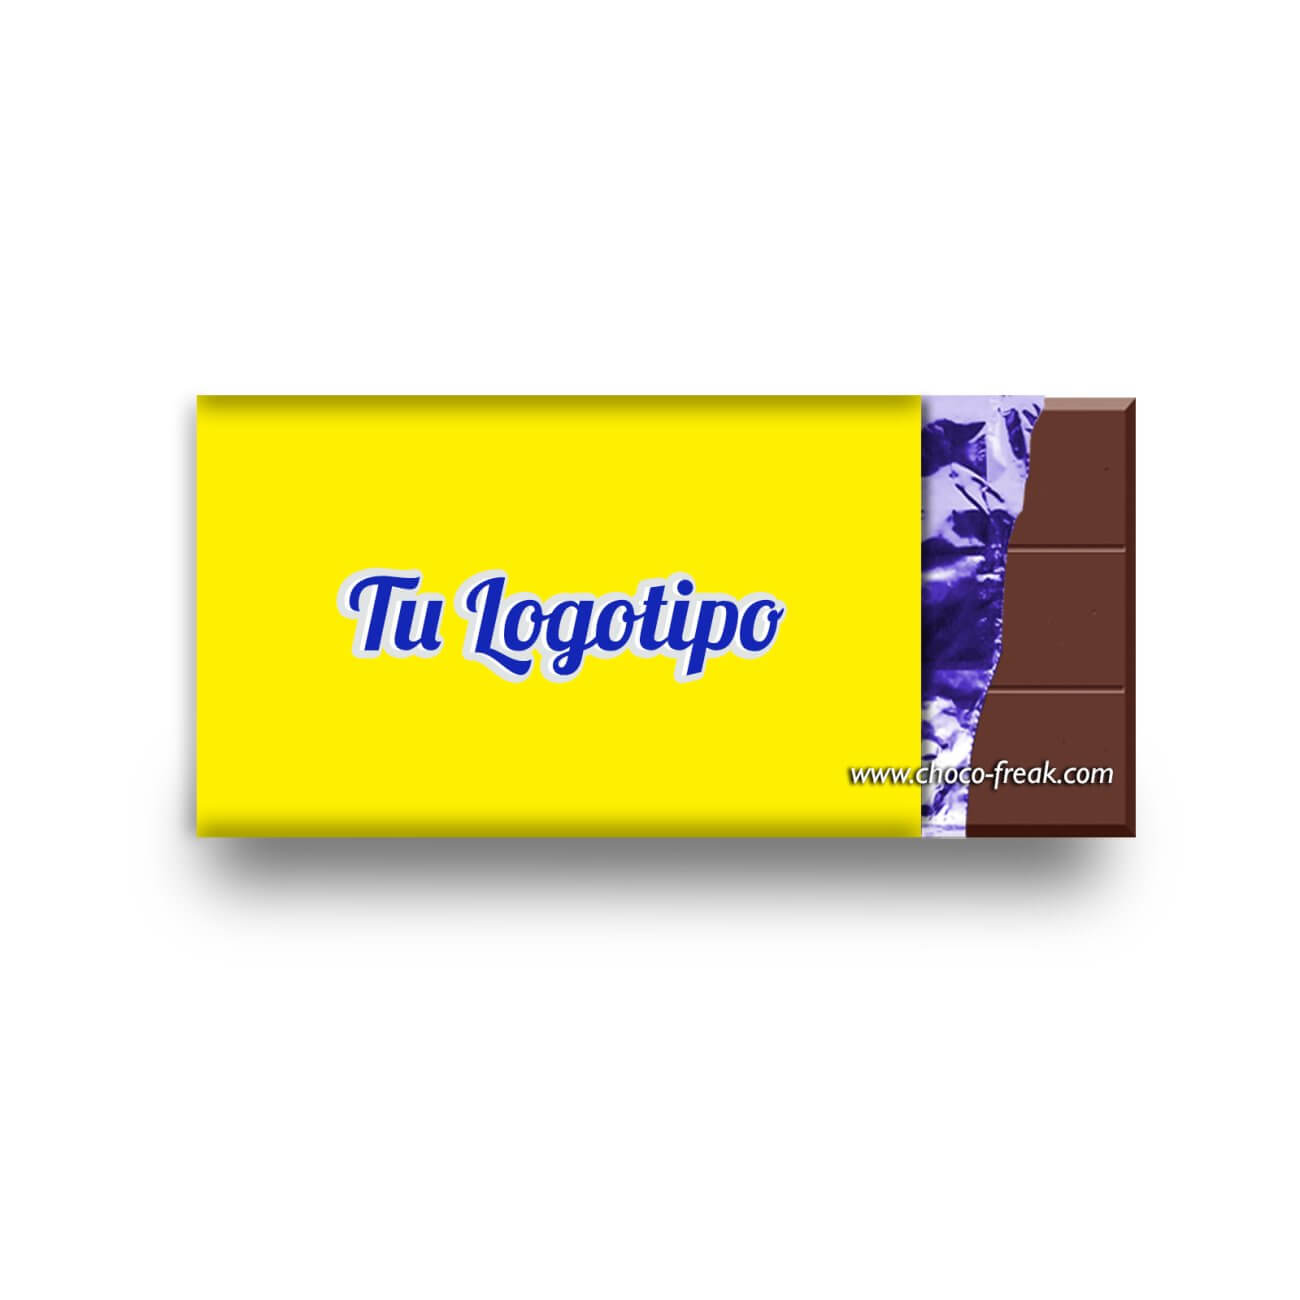 Barras de chocolate promocionales publicitarias Ecuador Quito Guayaquil